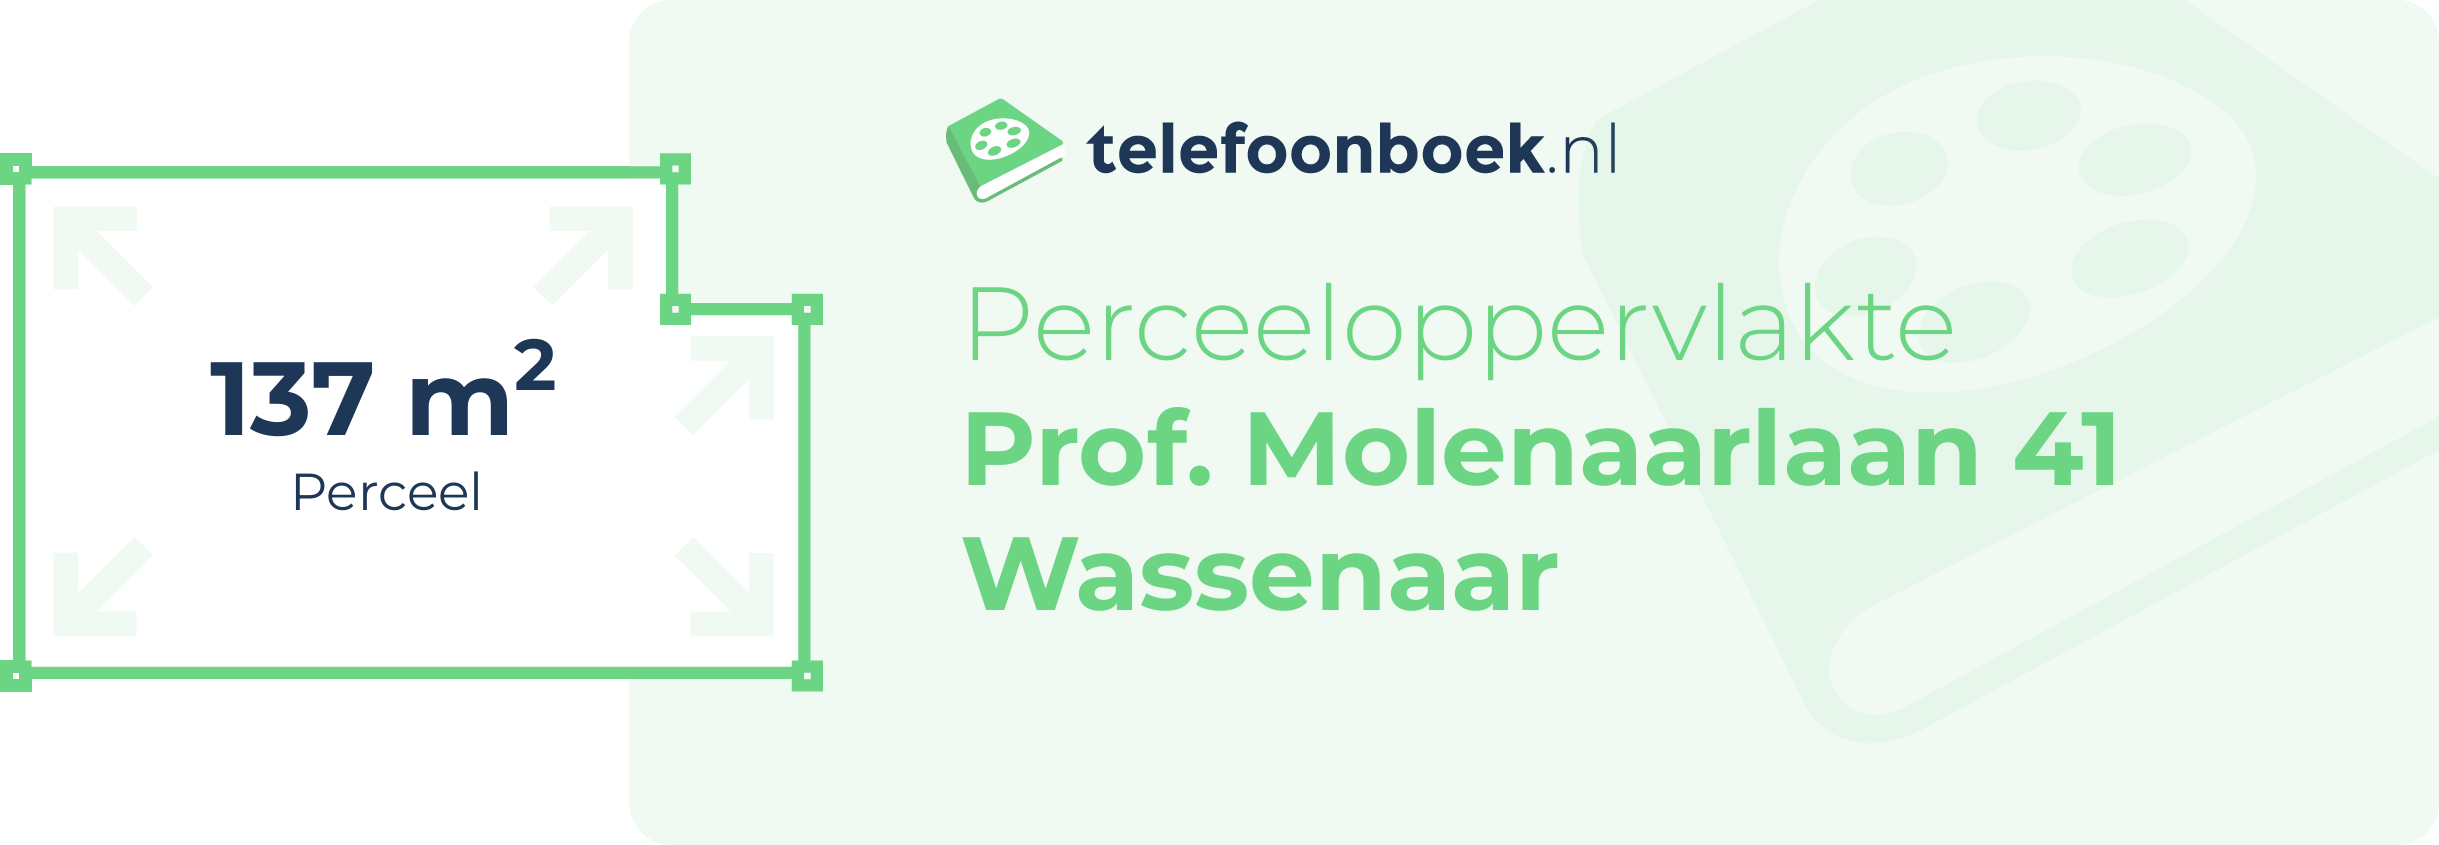 Perceeloppervlakte Prof. Molenaarlaan 41 Wassenaar